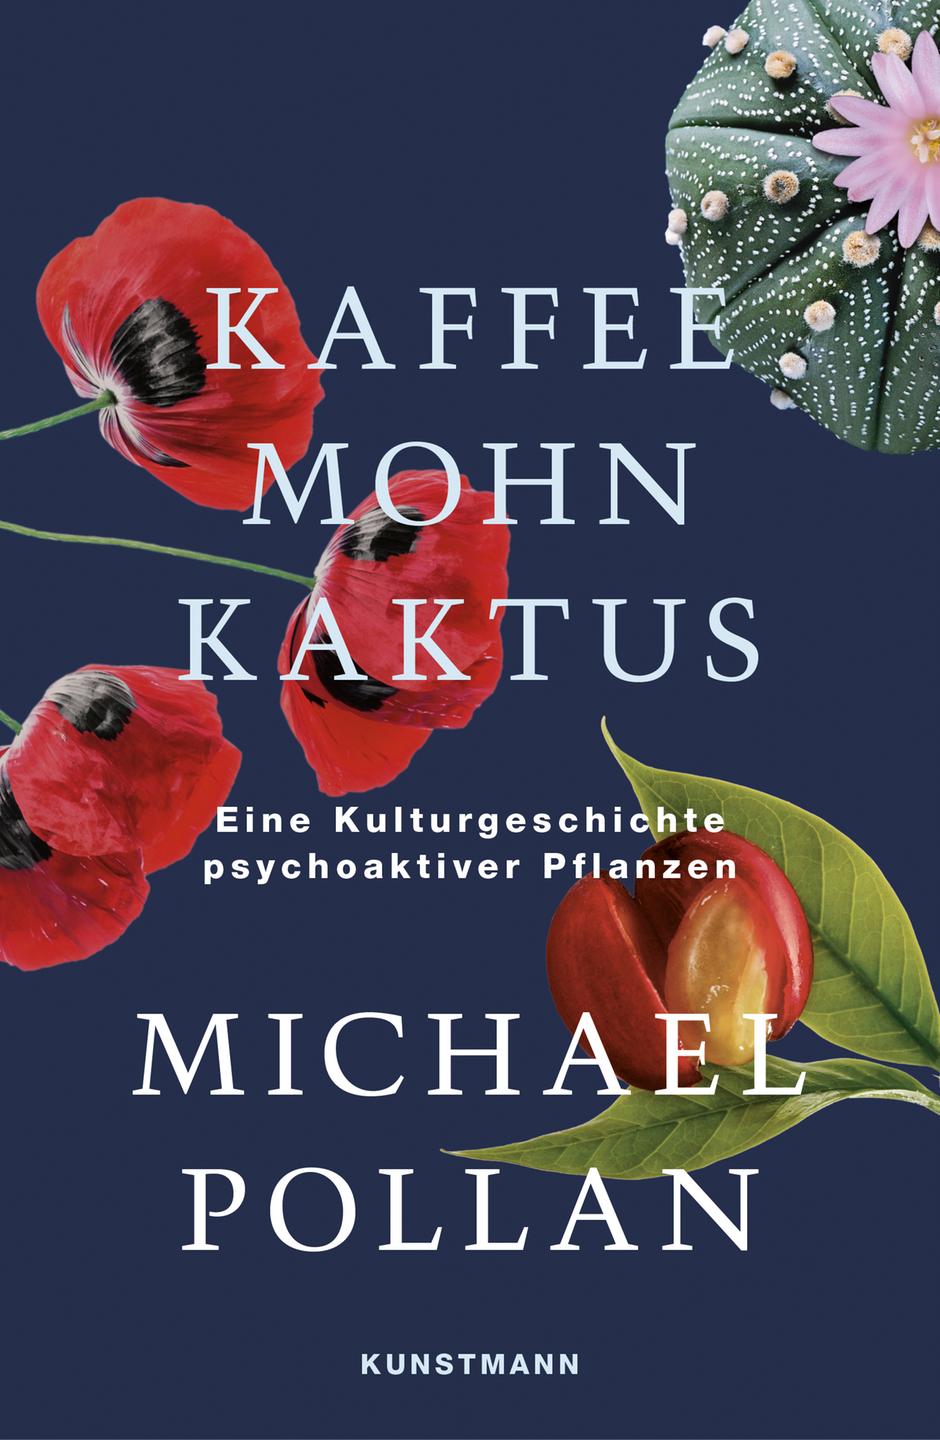 Michael Pollan: "Kaffee Mohn Kaktus. Eine Kulturgeschichte psychoaktiver Pflanzen"